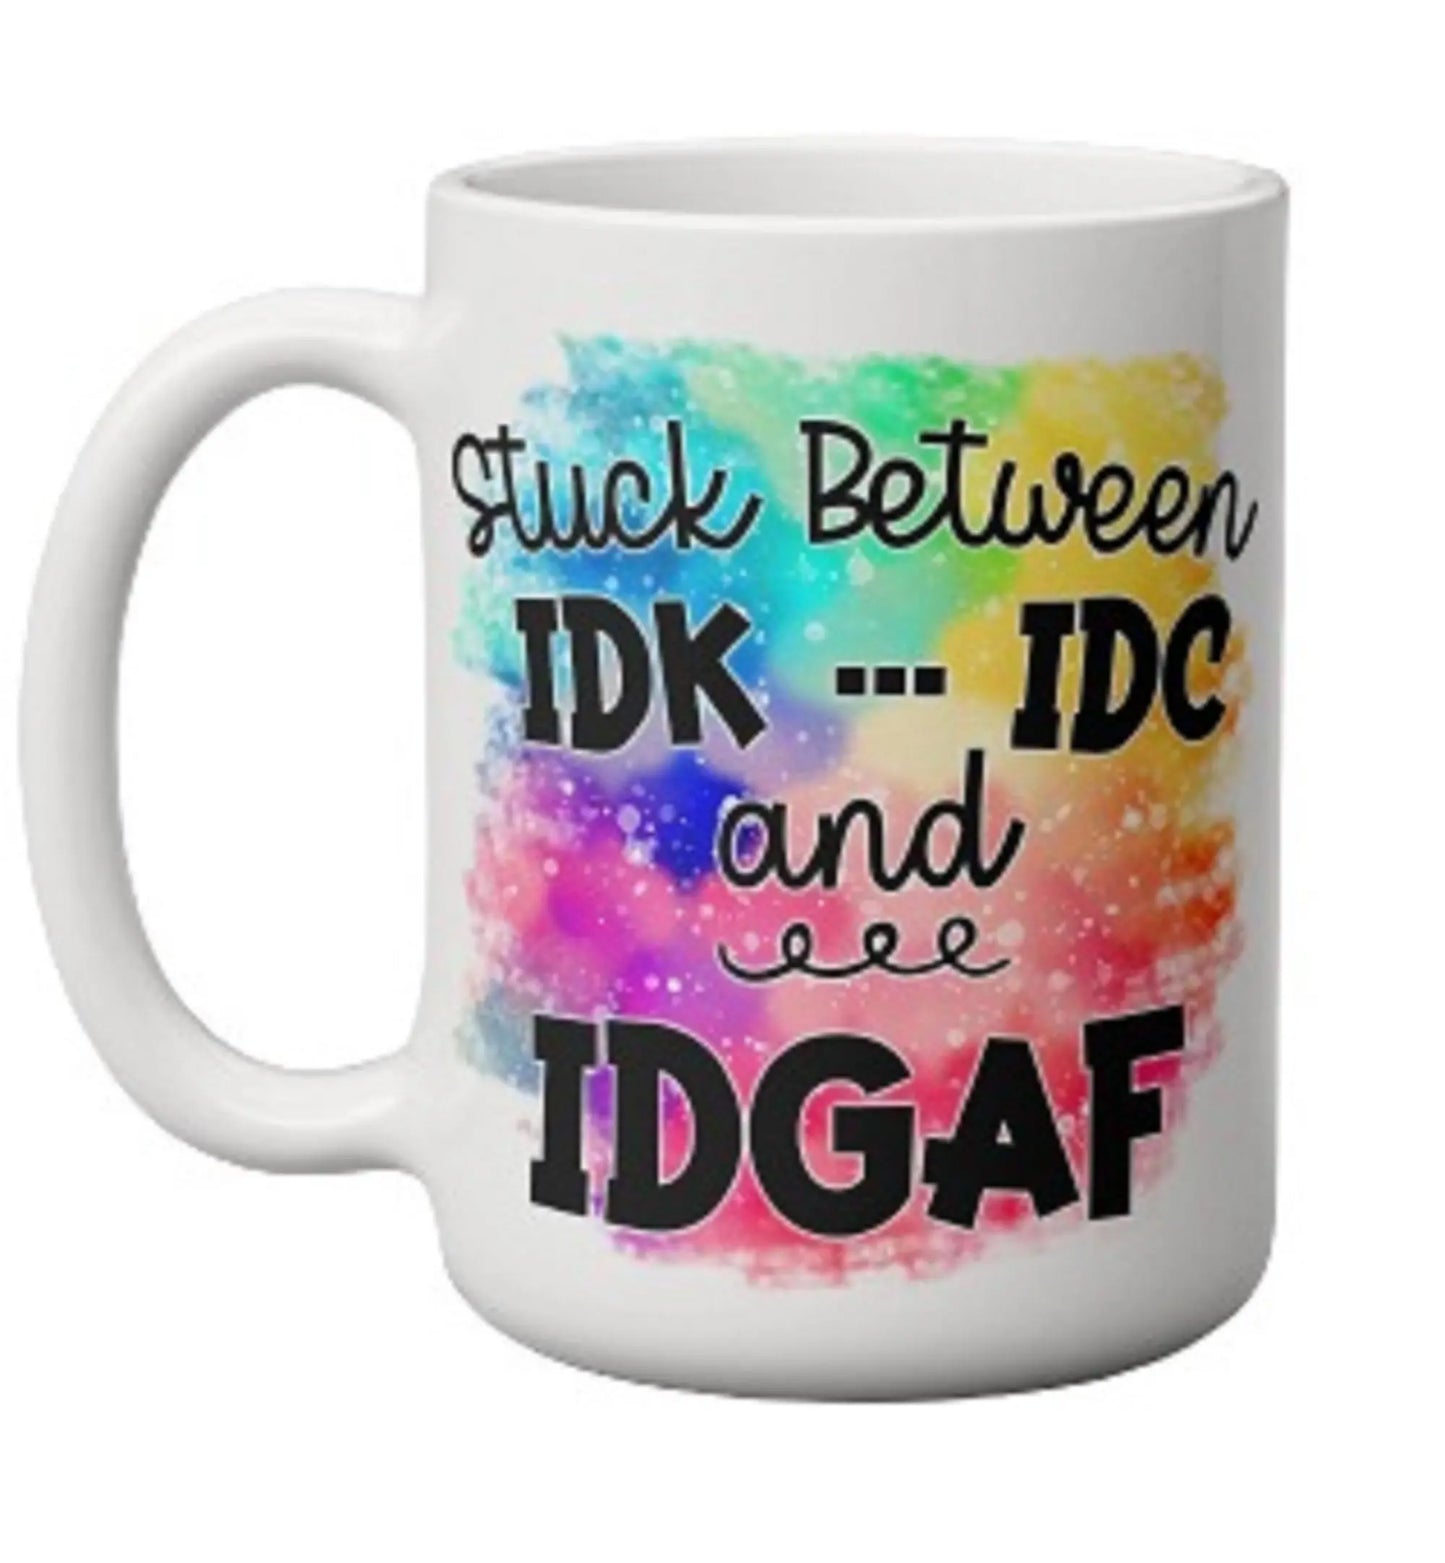  Stuck Betwenn IDK, IDC and IDGAF Mug by Free Spirit Accessories sold by Free Spirit Accessories